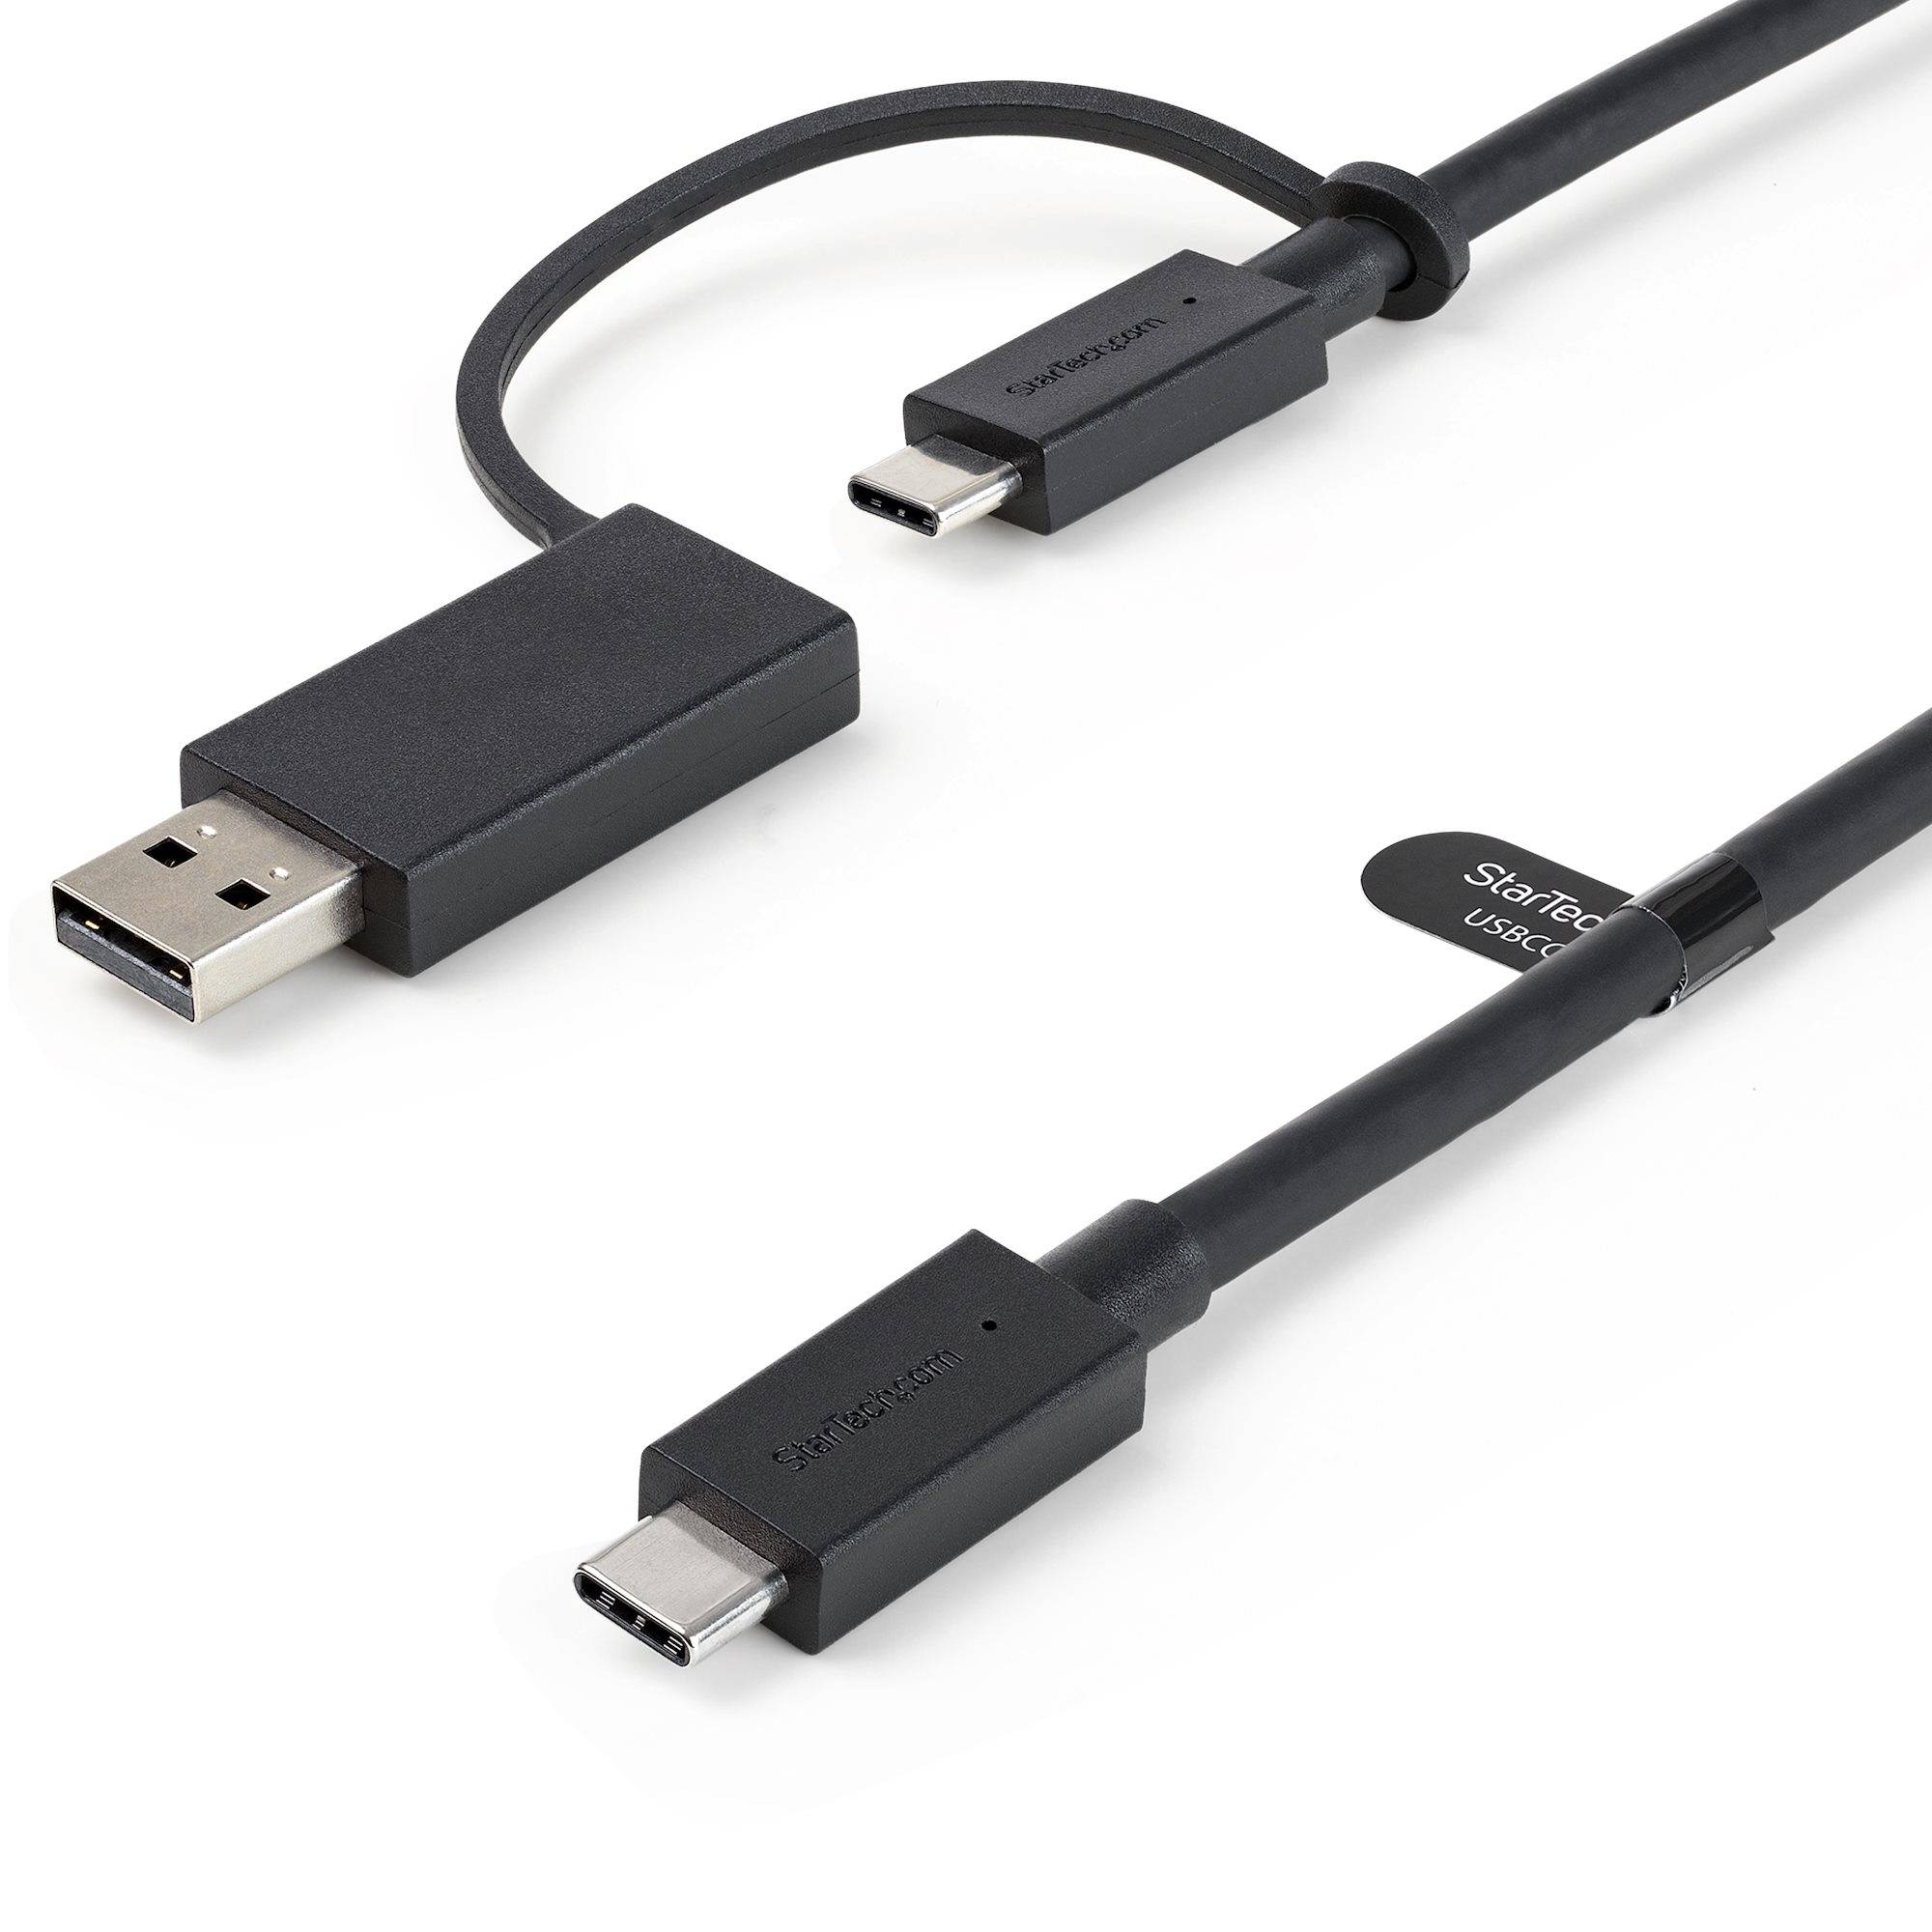 Rca Informatique - Image du produit : USB C CABLE WITH USB A ADAPTER- 1M USB-C HYBRID DOCK CABLE